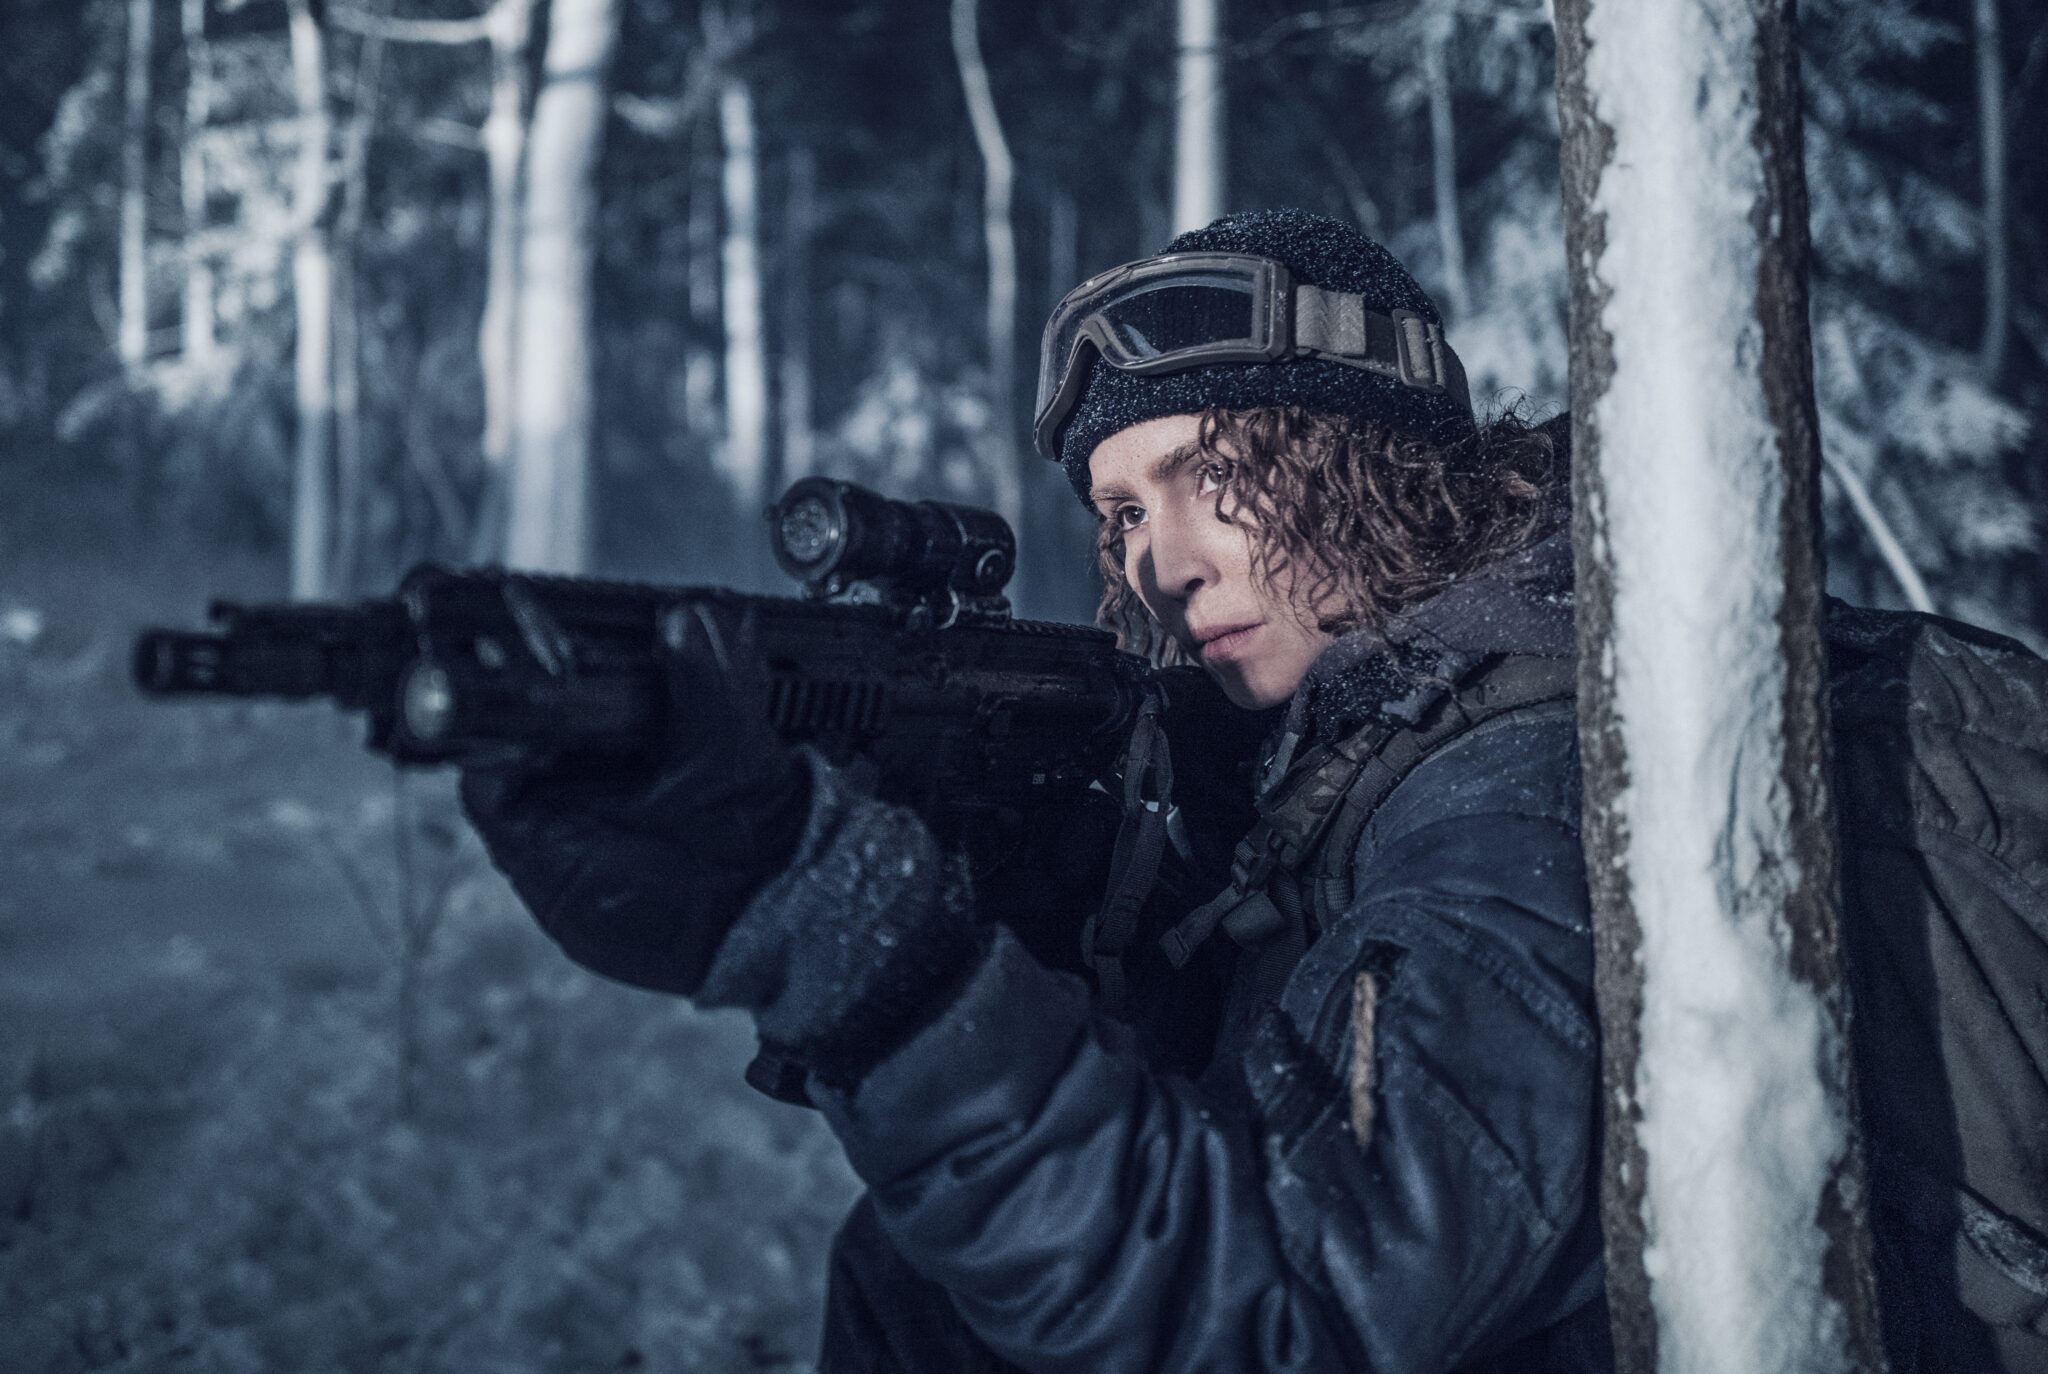 Noomi Rapace in Operation Schwarze Krabbe hinter einem Baum mit Gewehr im Anschlag und im dunklen, wintertauglichen Outfit.